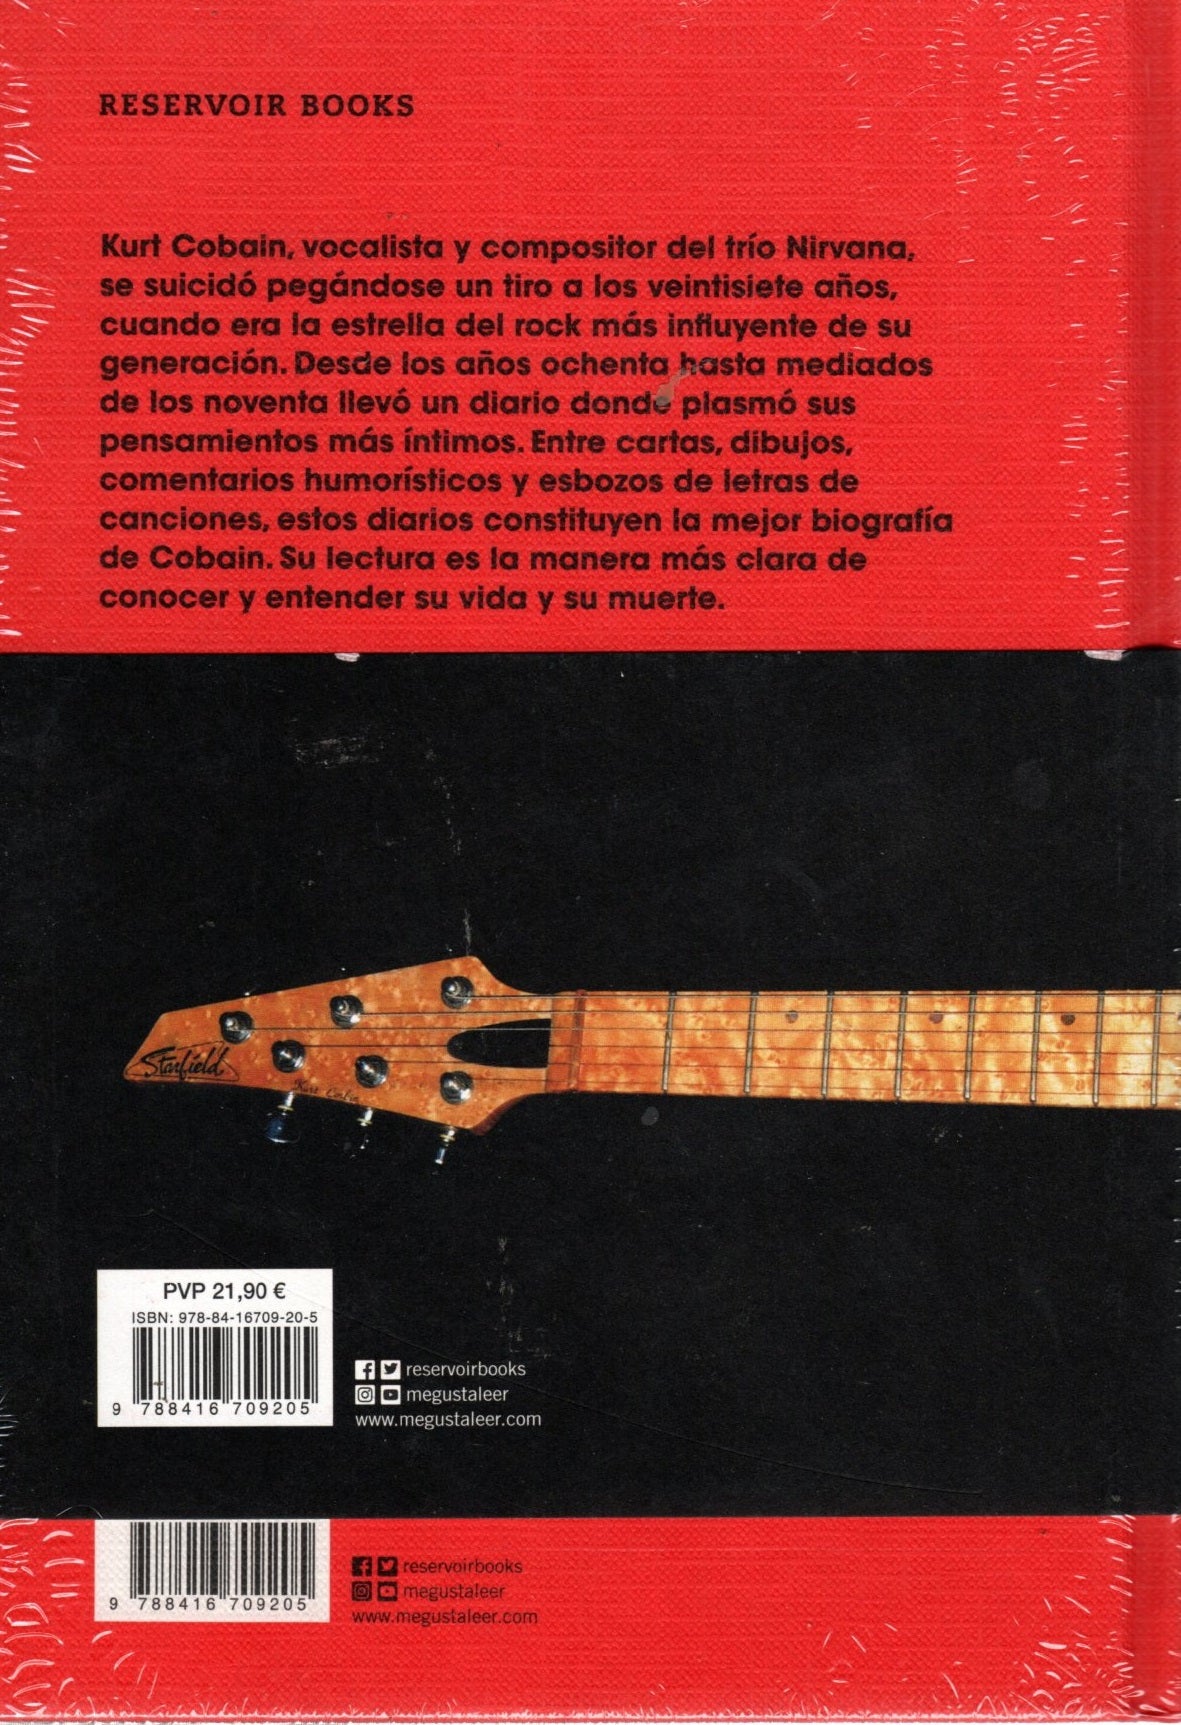 Libro Kurt Cobain - Diarios